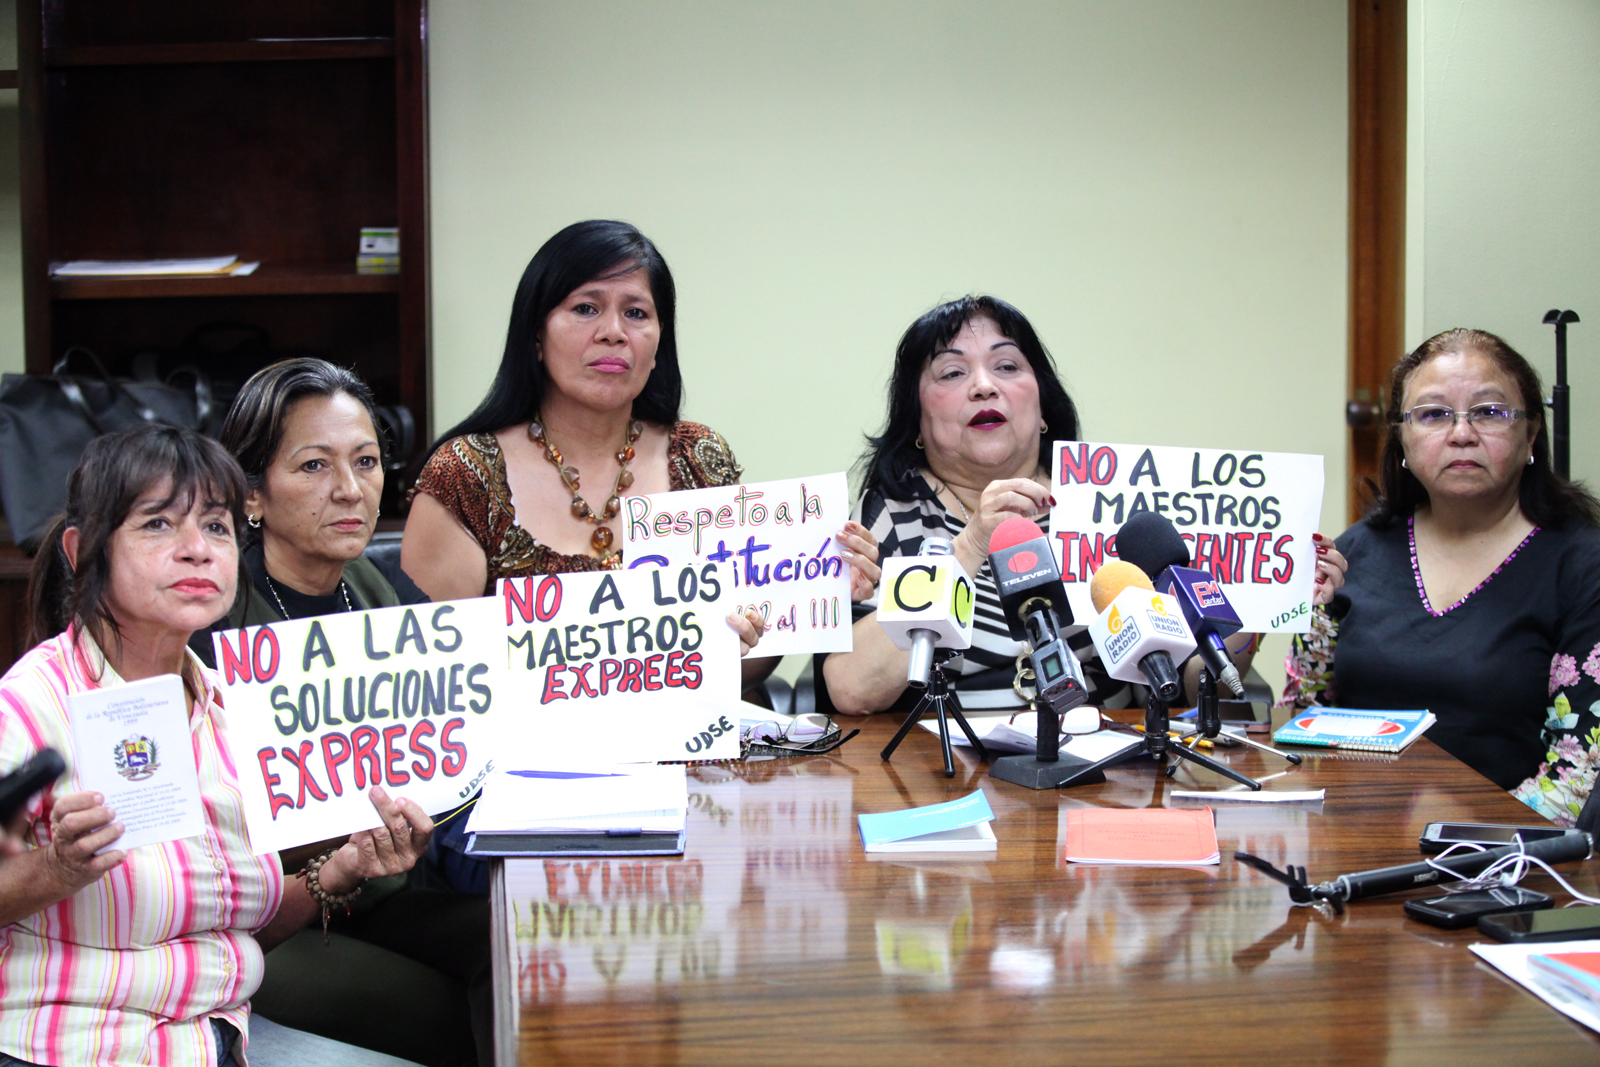 Bolivia Suárez: Rechazamos la figura de maestros exprés que solo formarán mediocridad